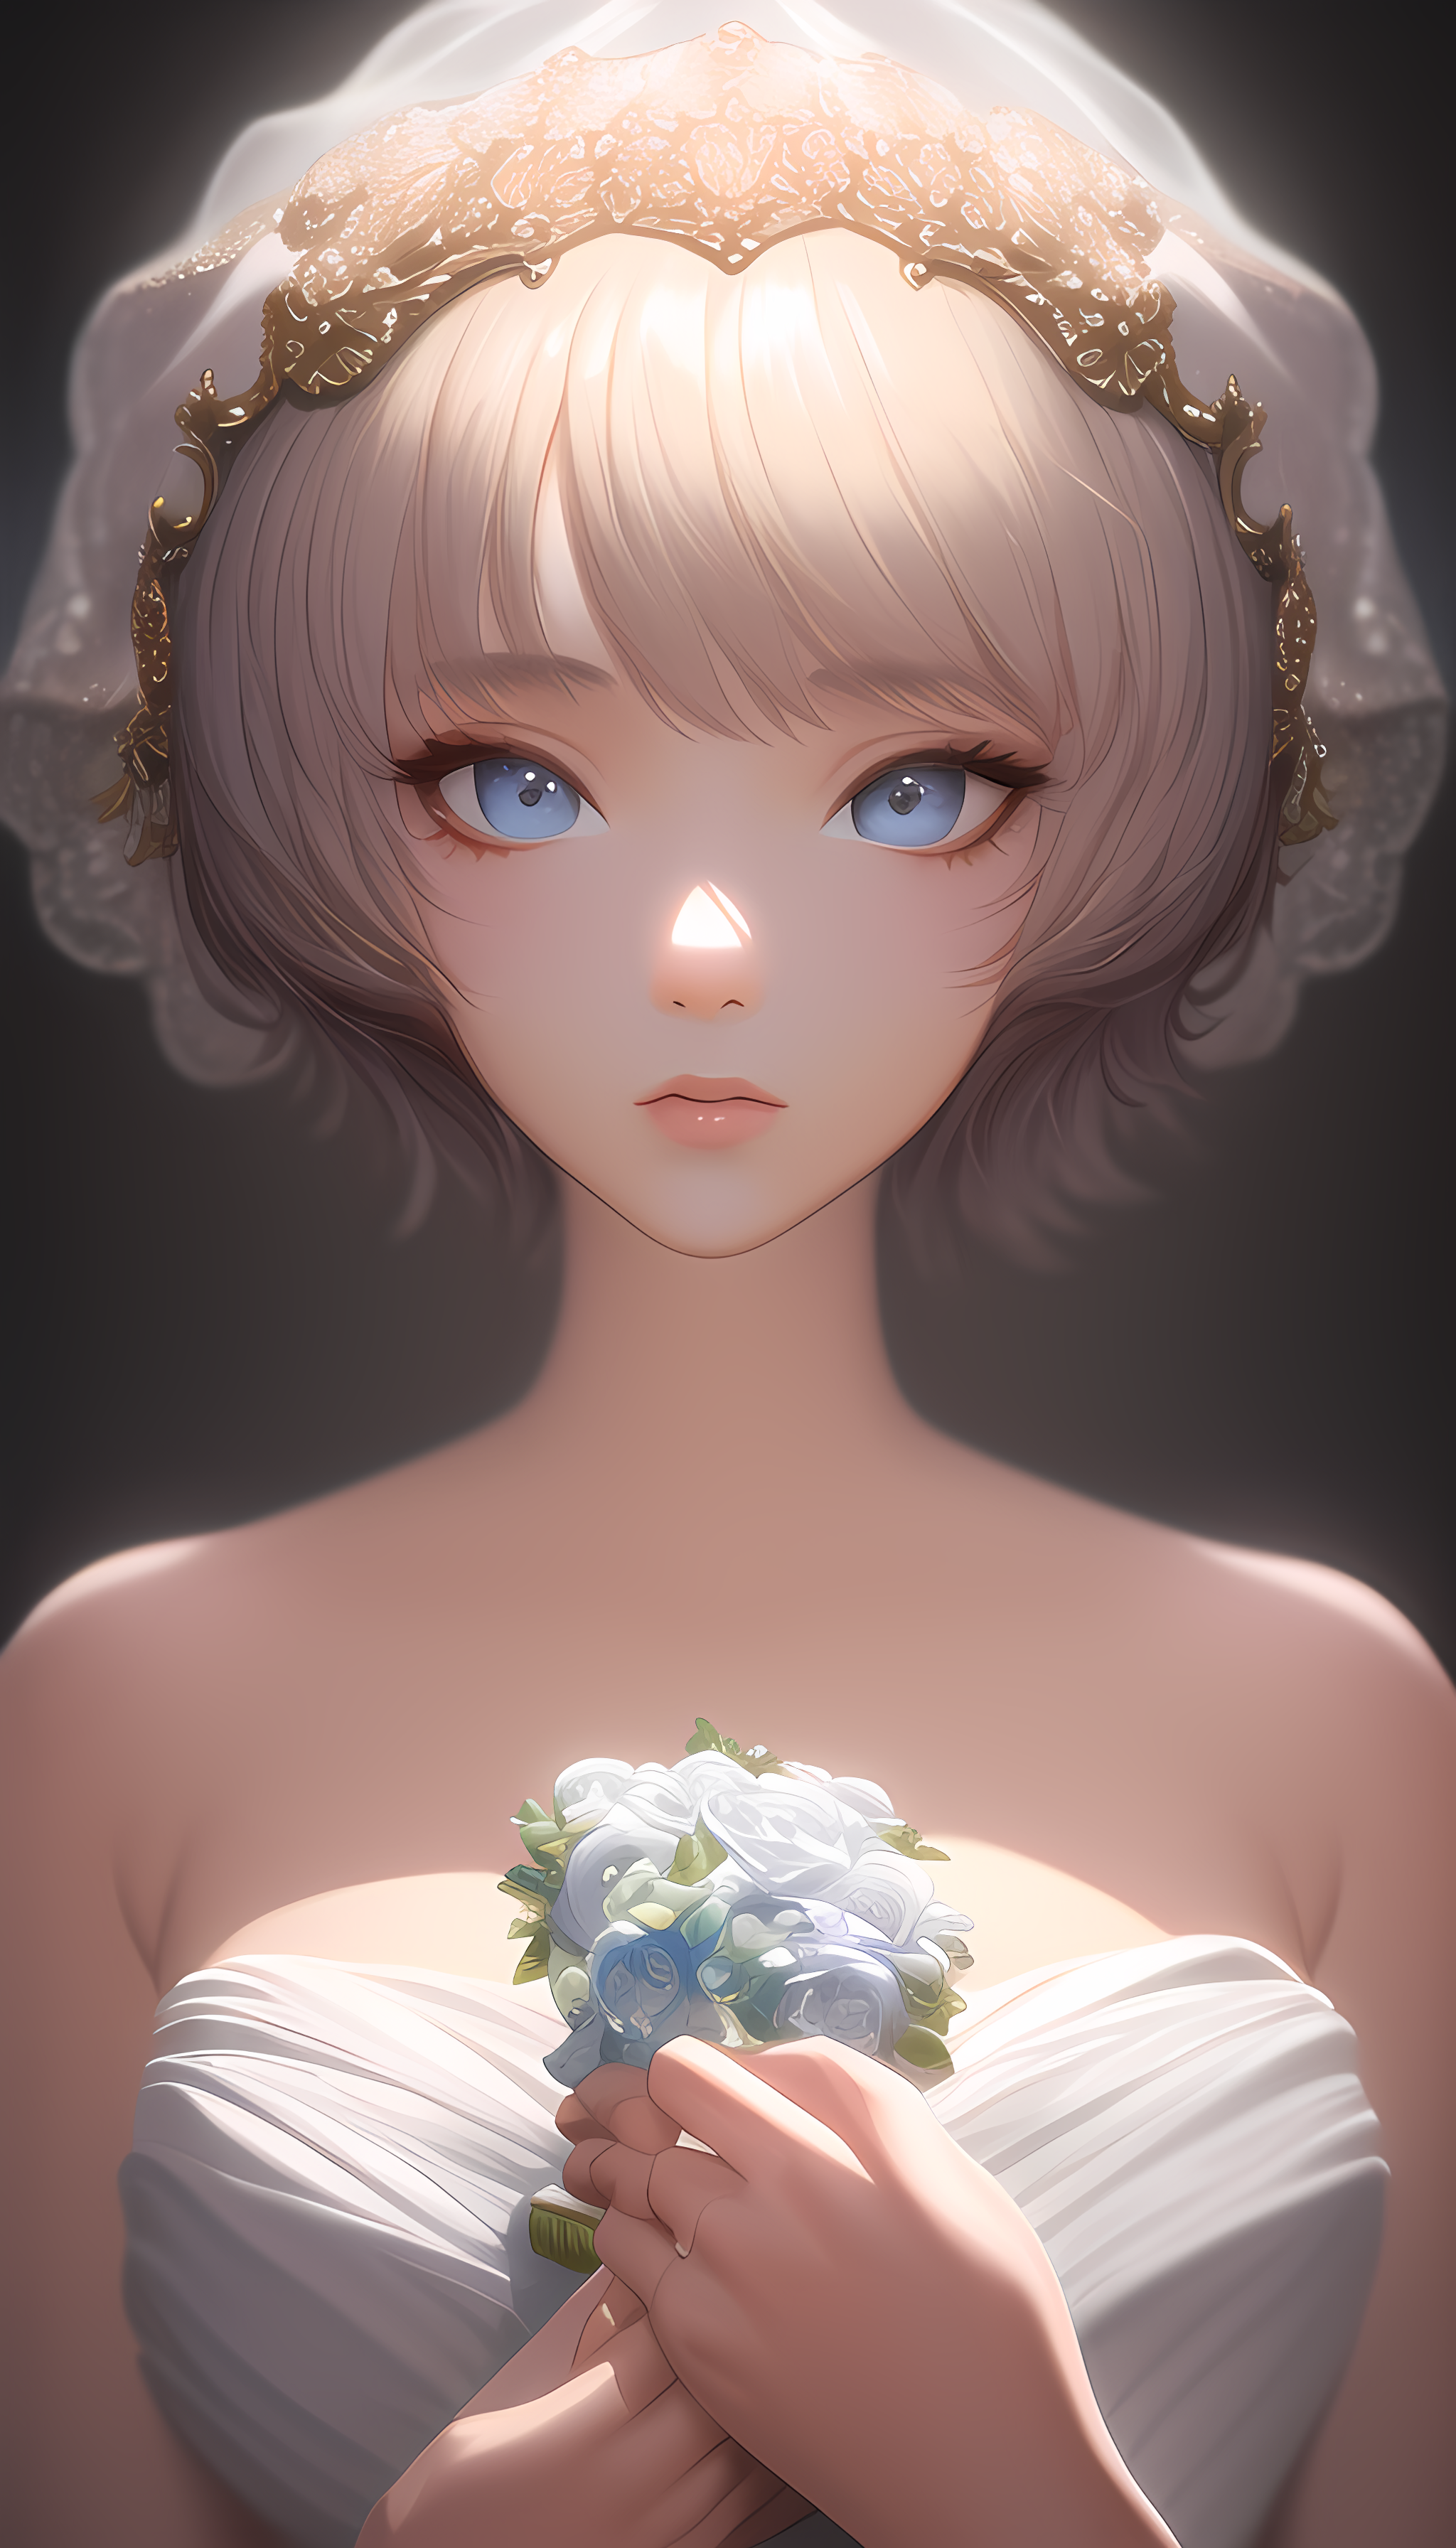 美丽的新娘